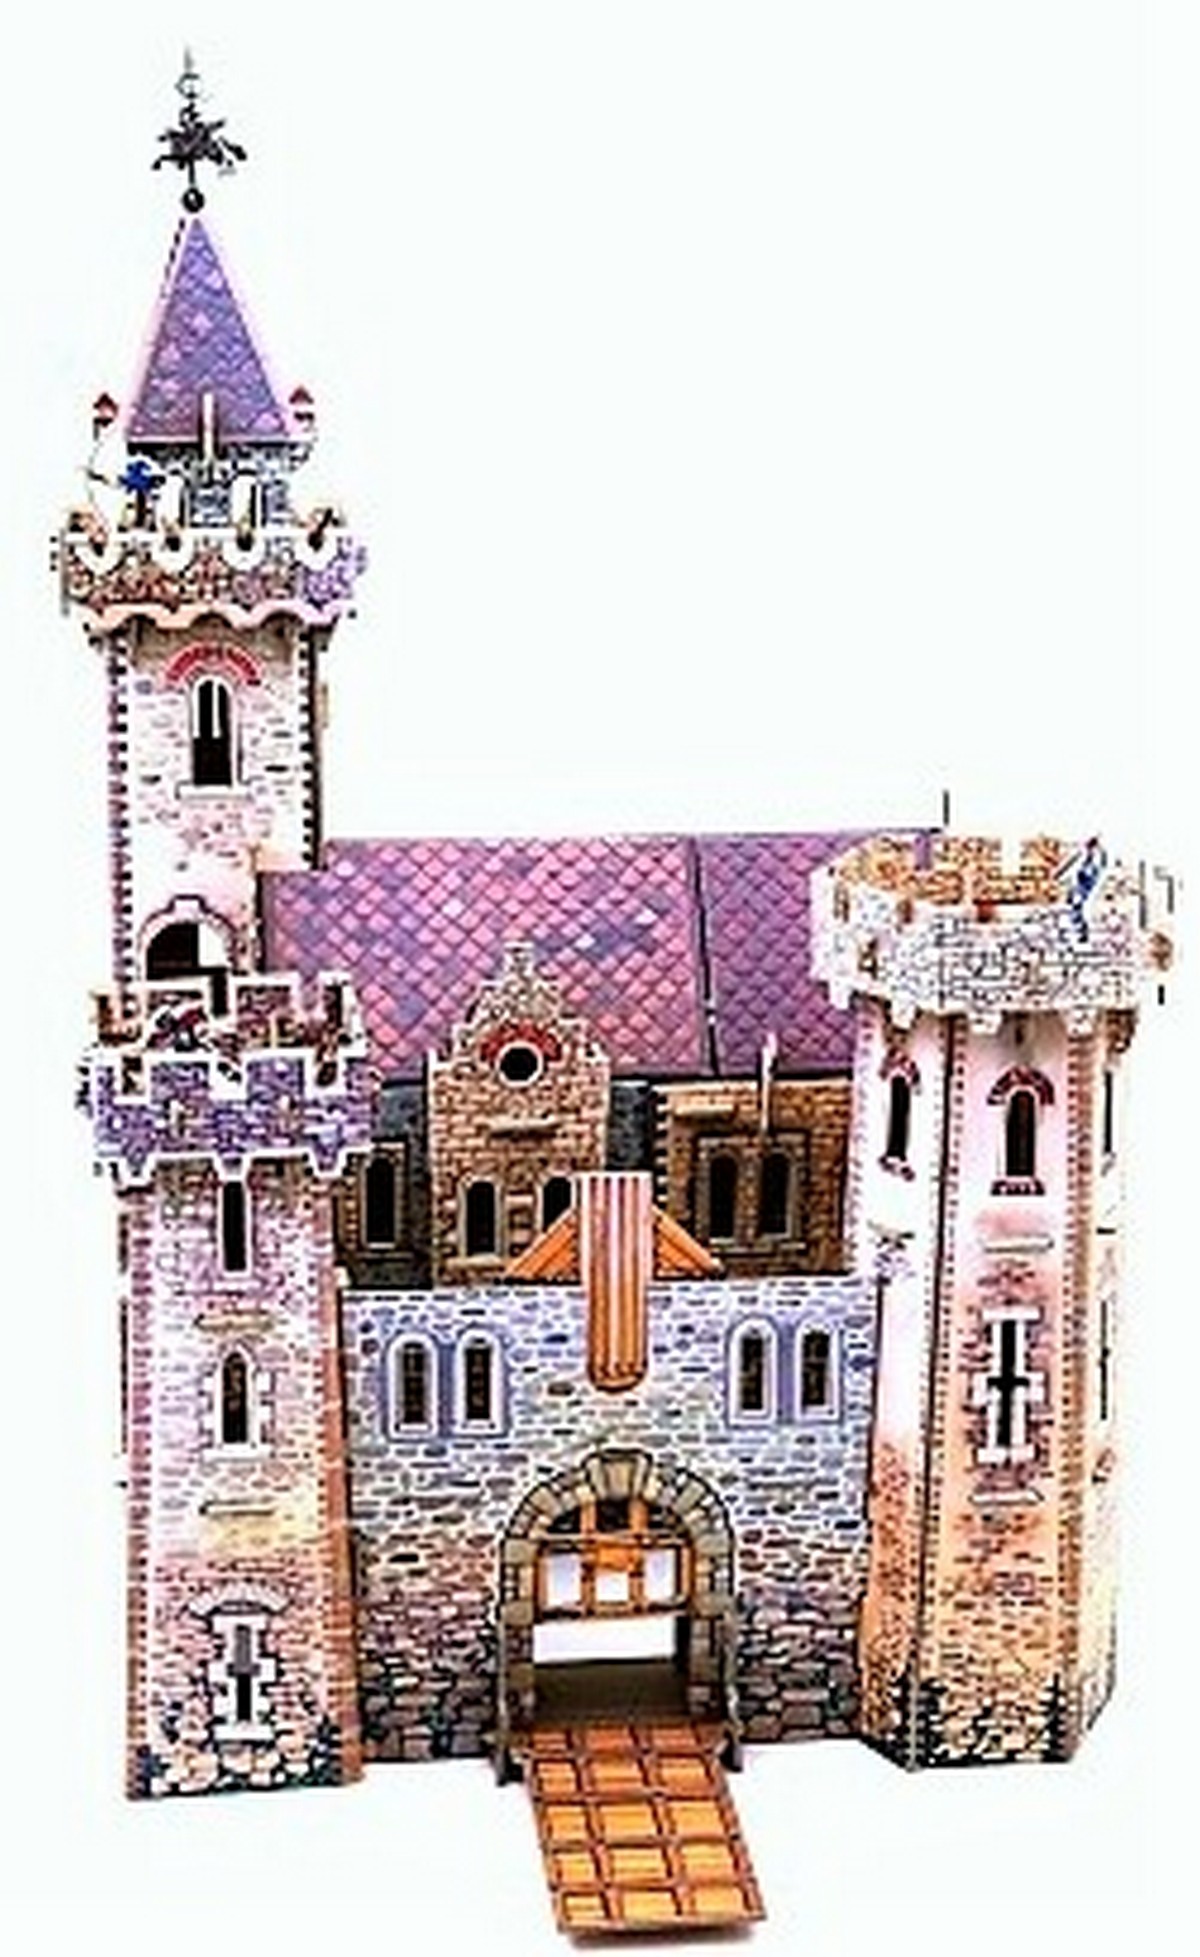 3d Puzzle KARTONMODELLBAU Papiermodell Geschenk Idee Spielzeug mittelalterliche Stadt Ritterburg Ritter Schloss